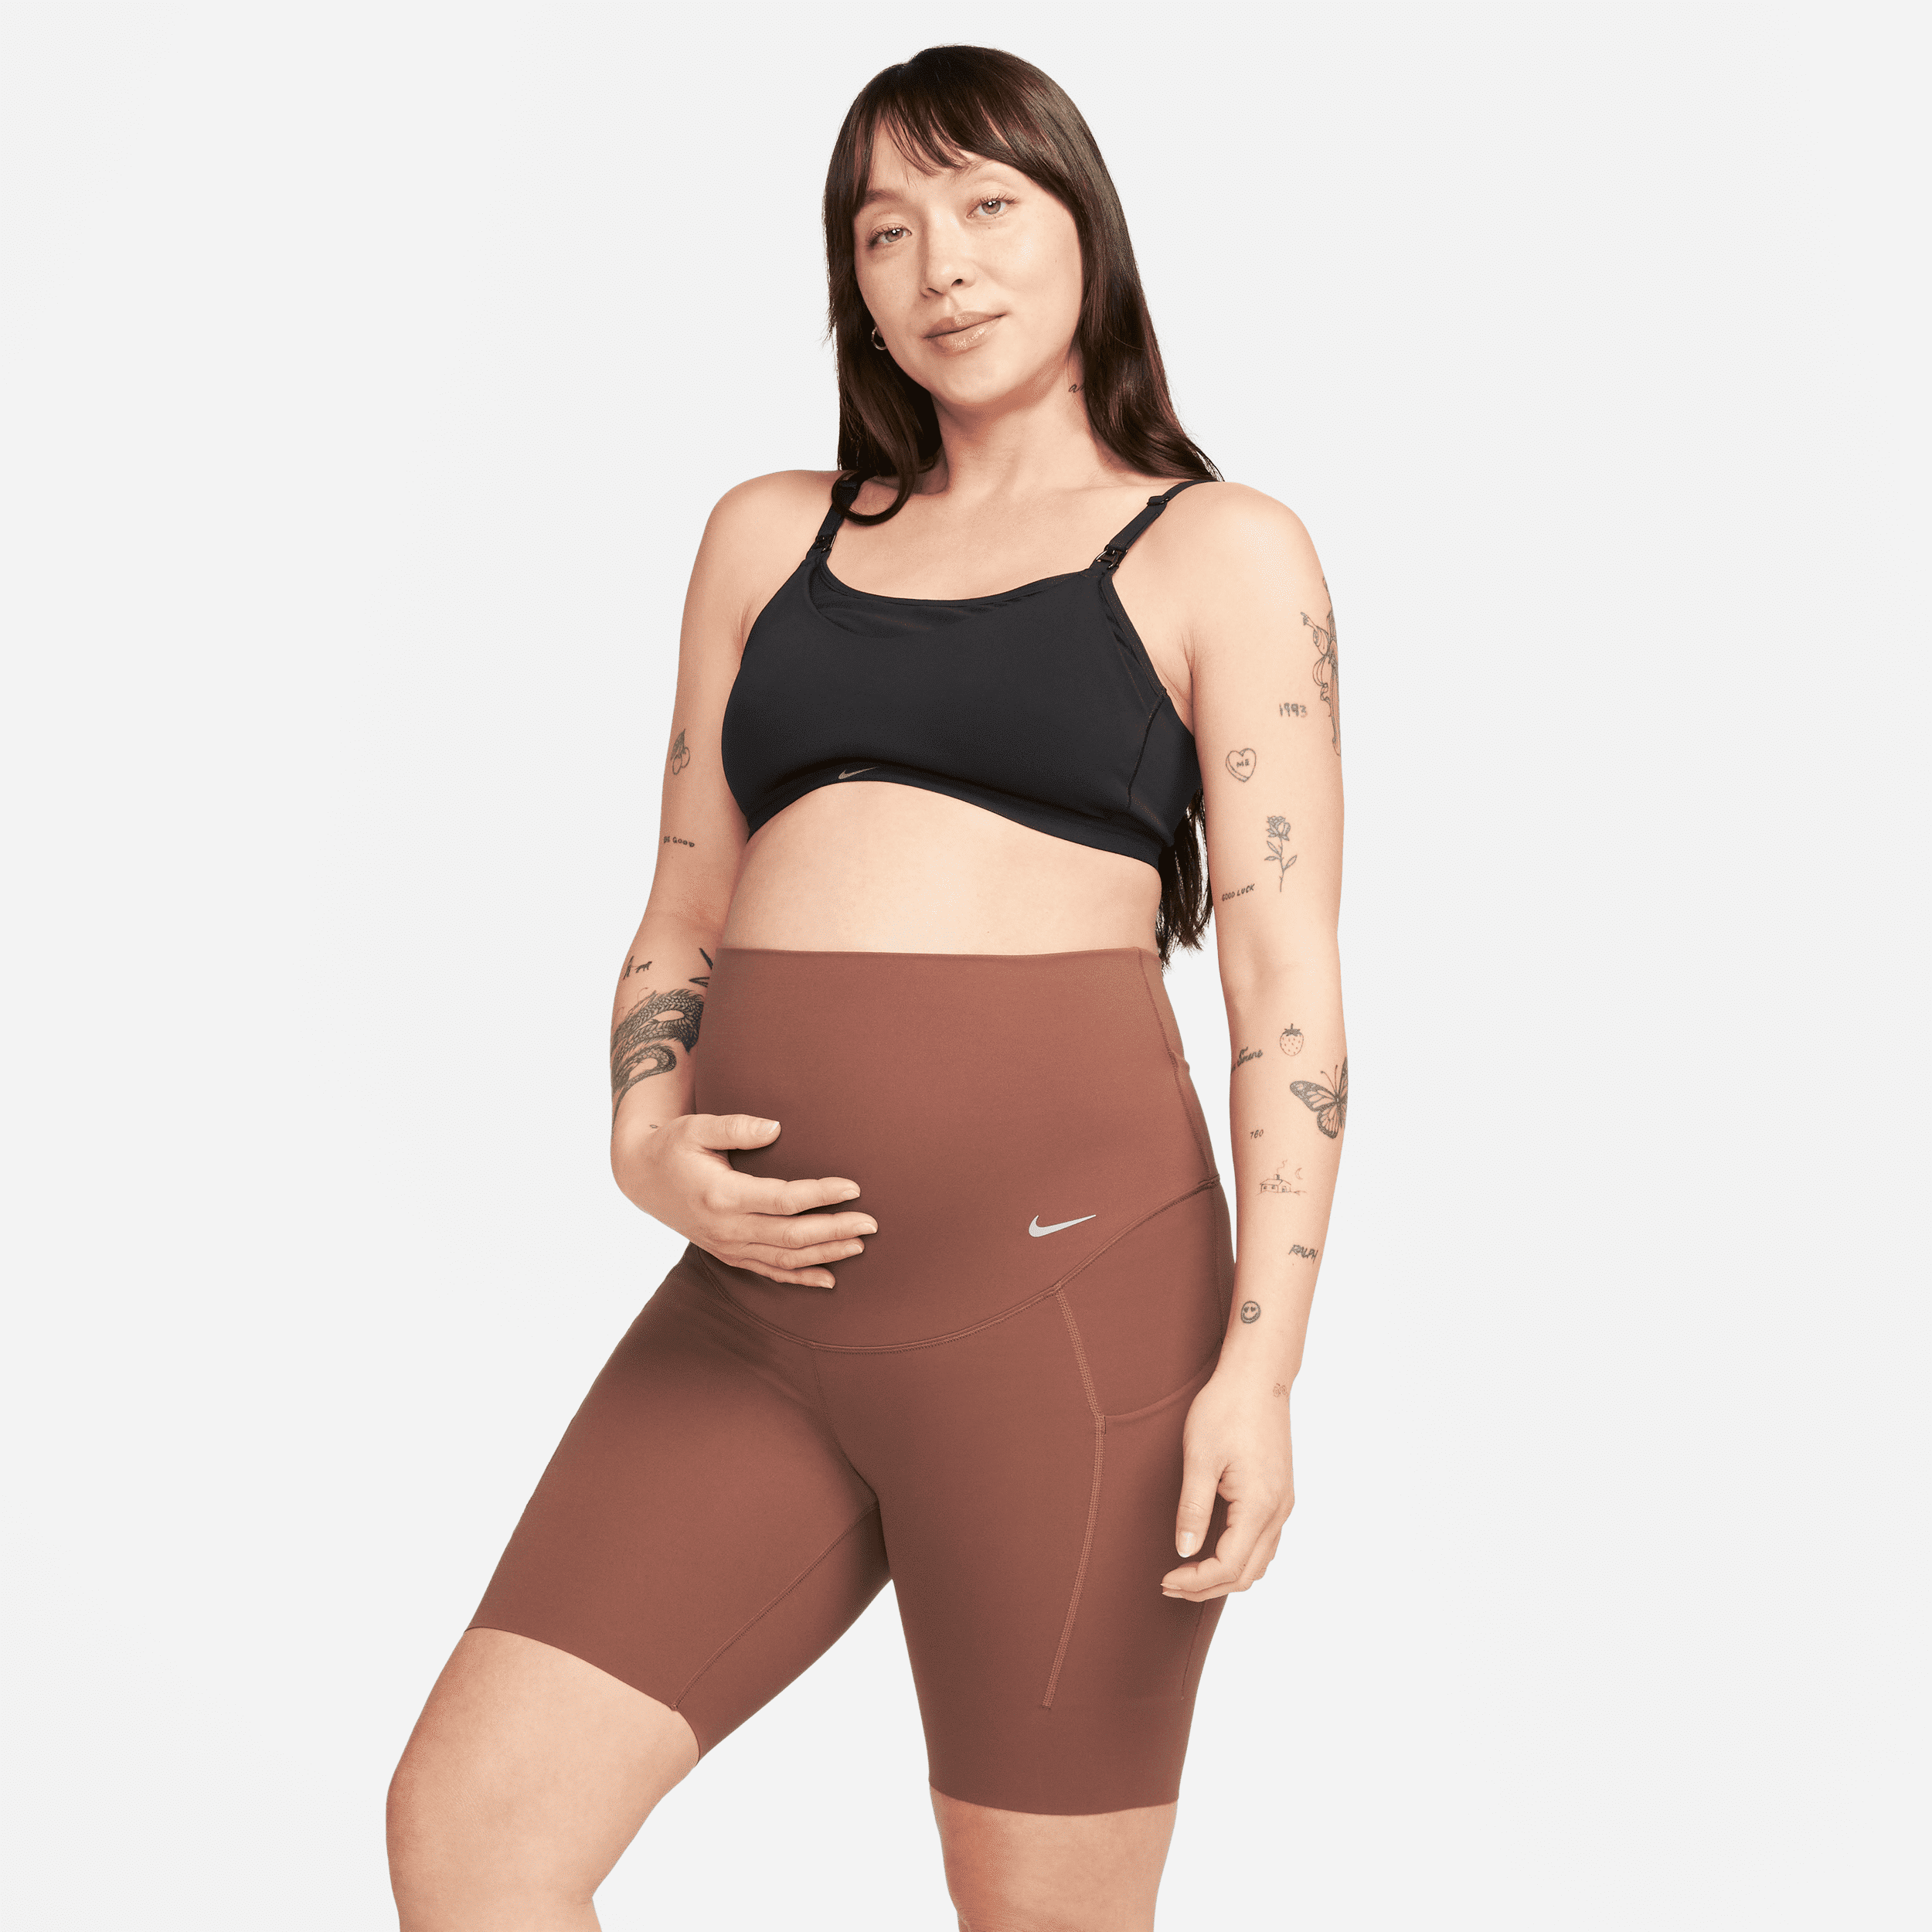 nike shorts modello ciclista 21 cm a vita alta e sostegno leggero con tasche  zenvy (m) – donna (maternità) - marrone